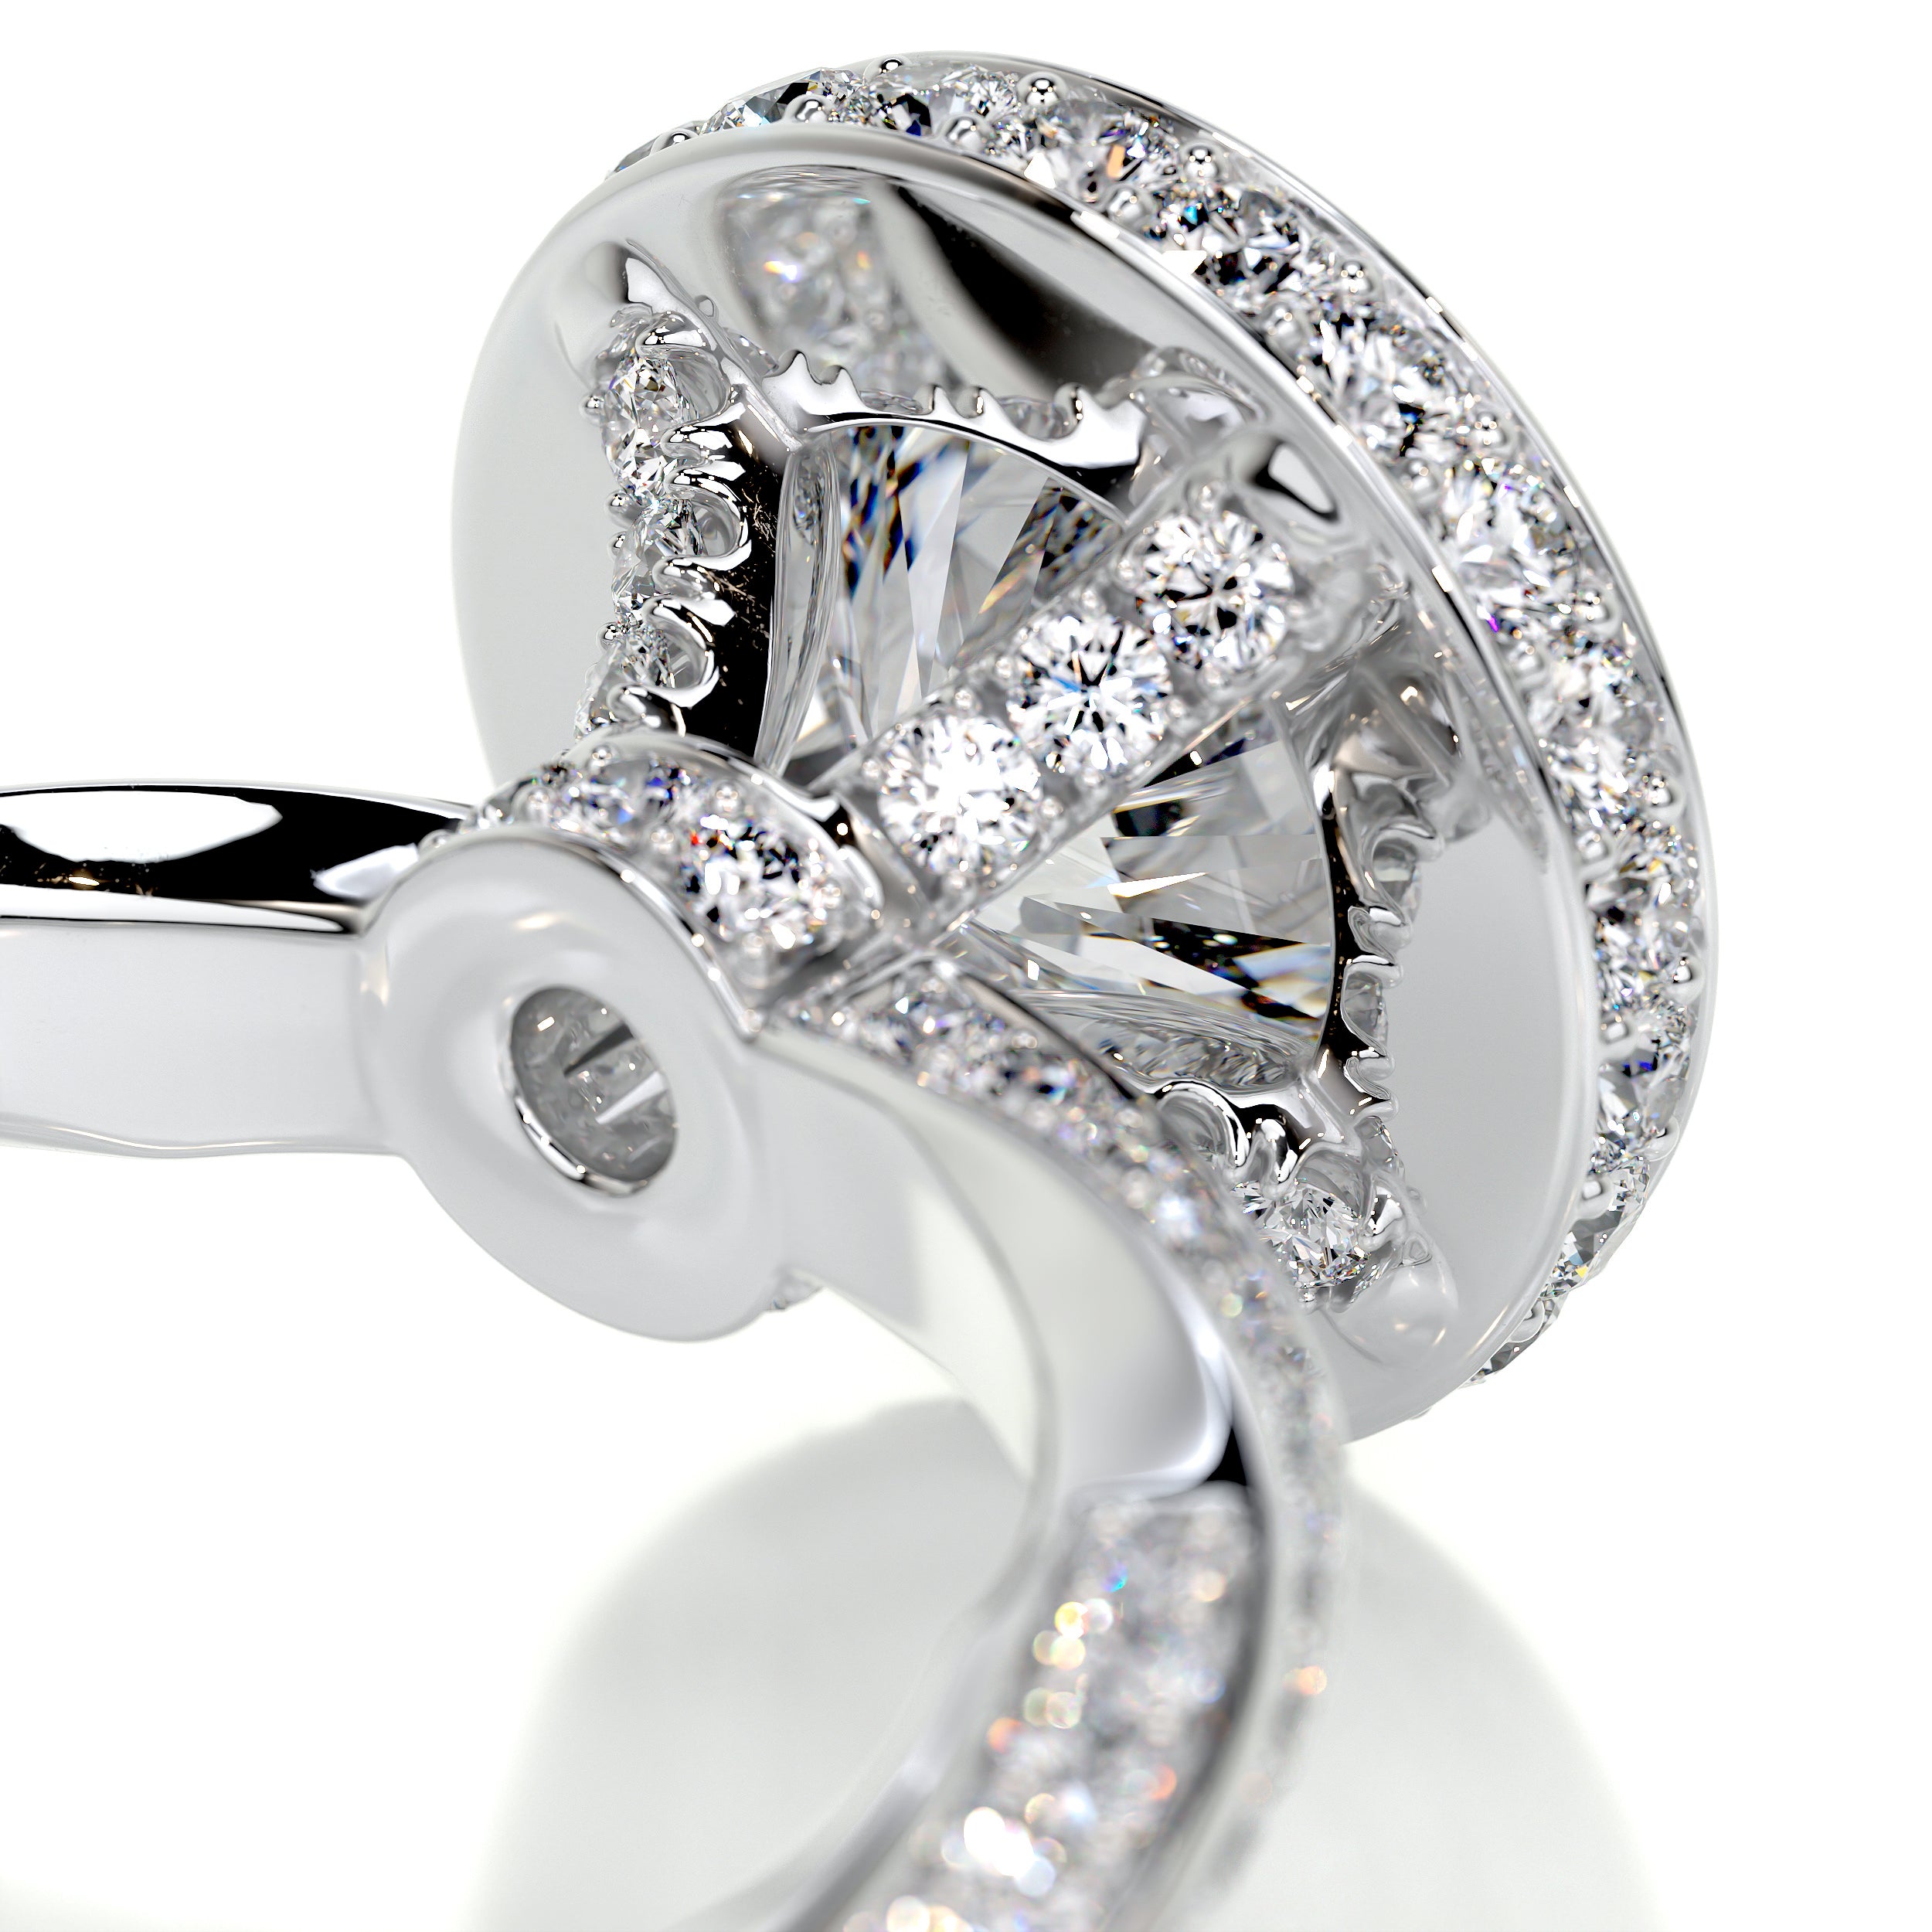 Sarina Diamond Engagement Ring   (1.7 Carat) -18K White Gold